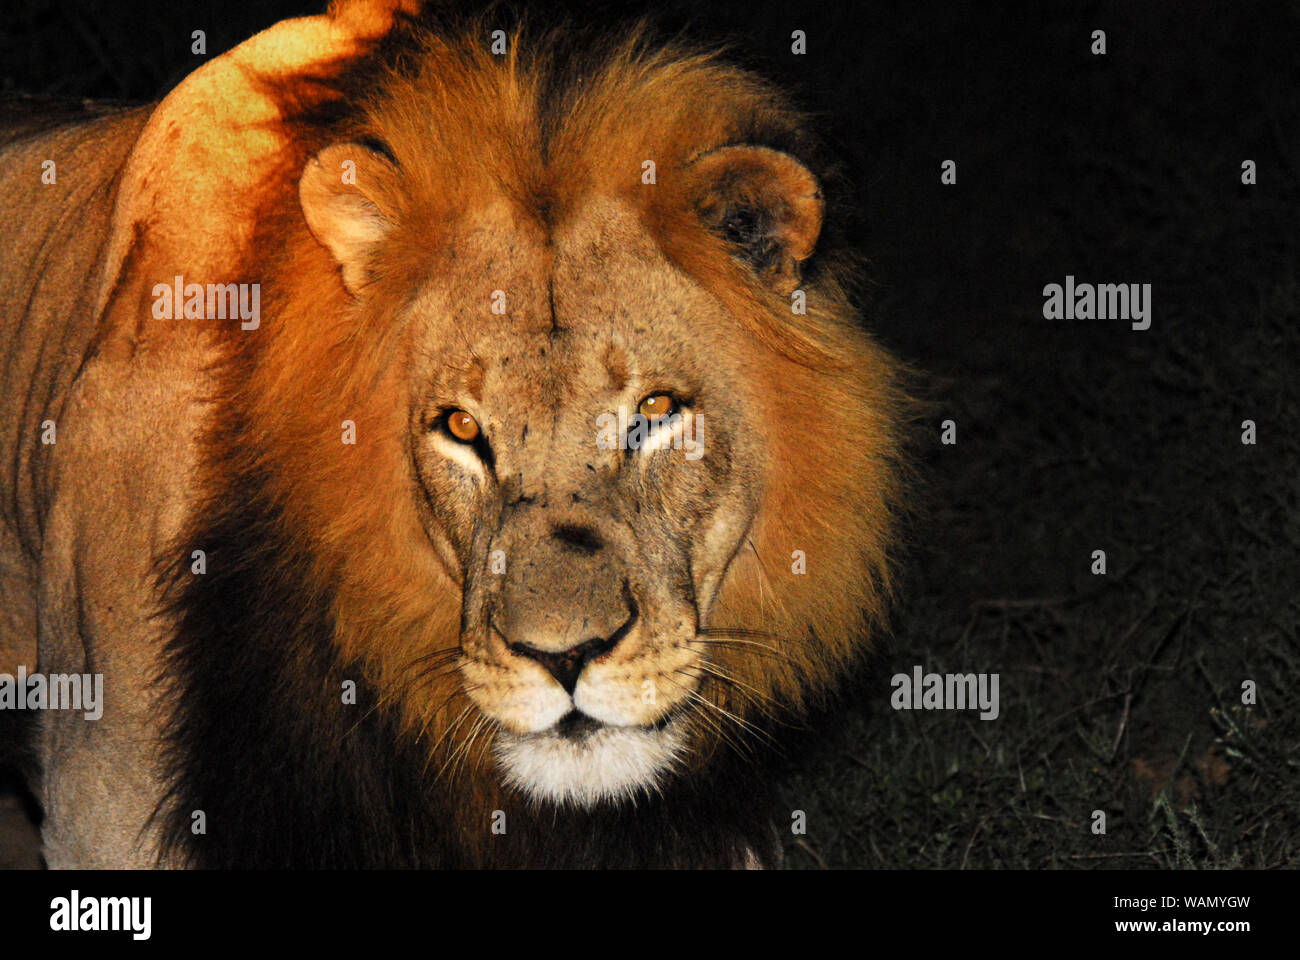 Diese erstaunliche Lion kam ganz in der Nähe unserer Safari Lkw während einer Nacht Safari in Südafrika. . . Atemberaubend! Stockfoto